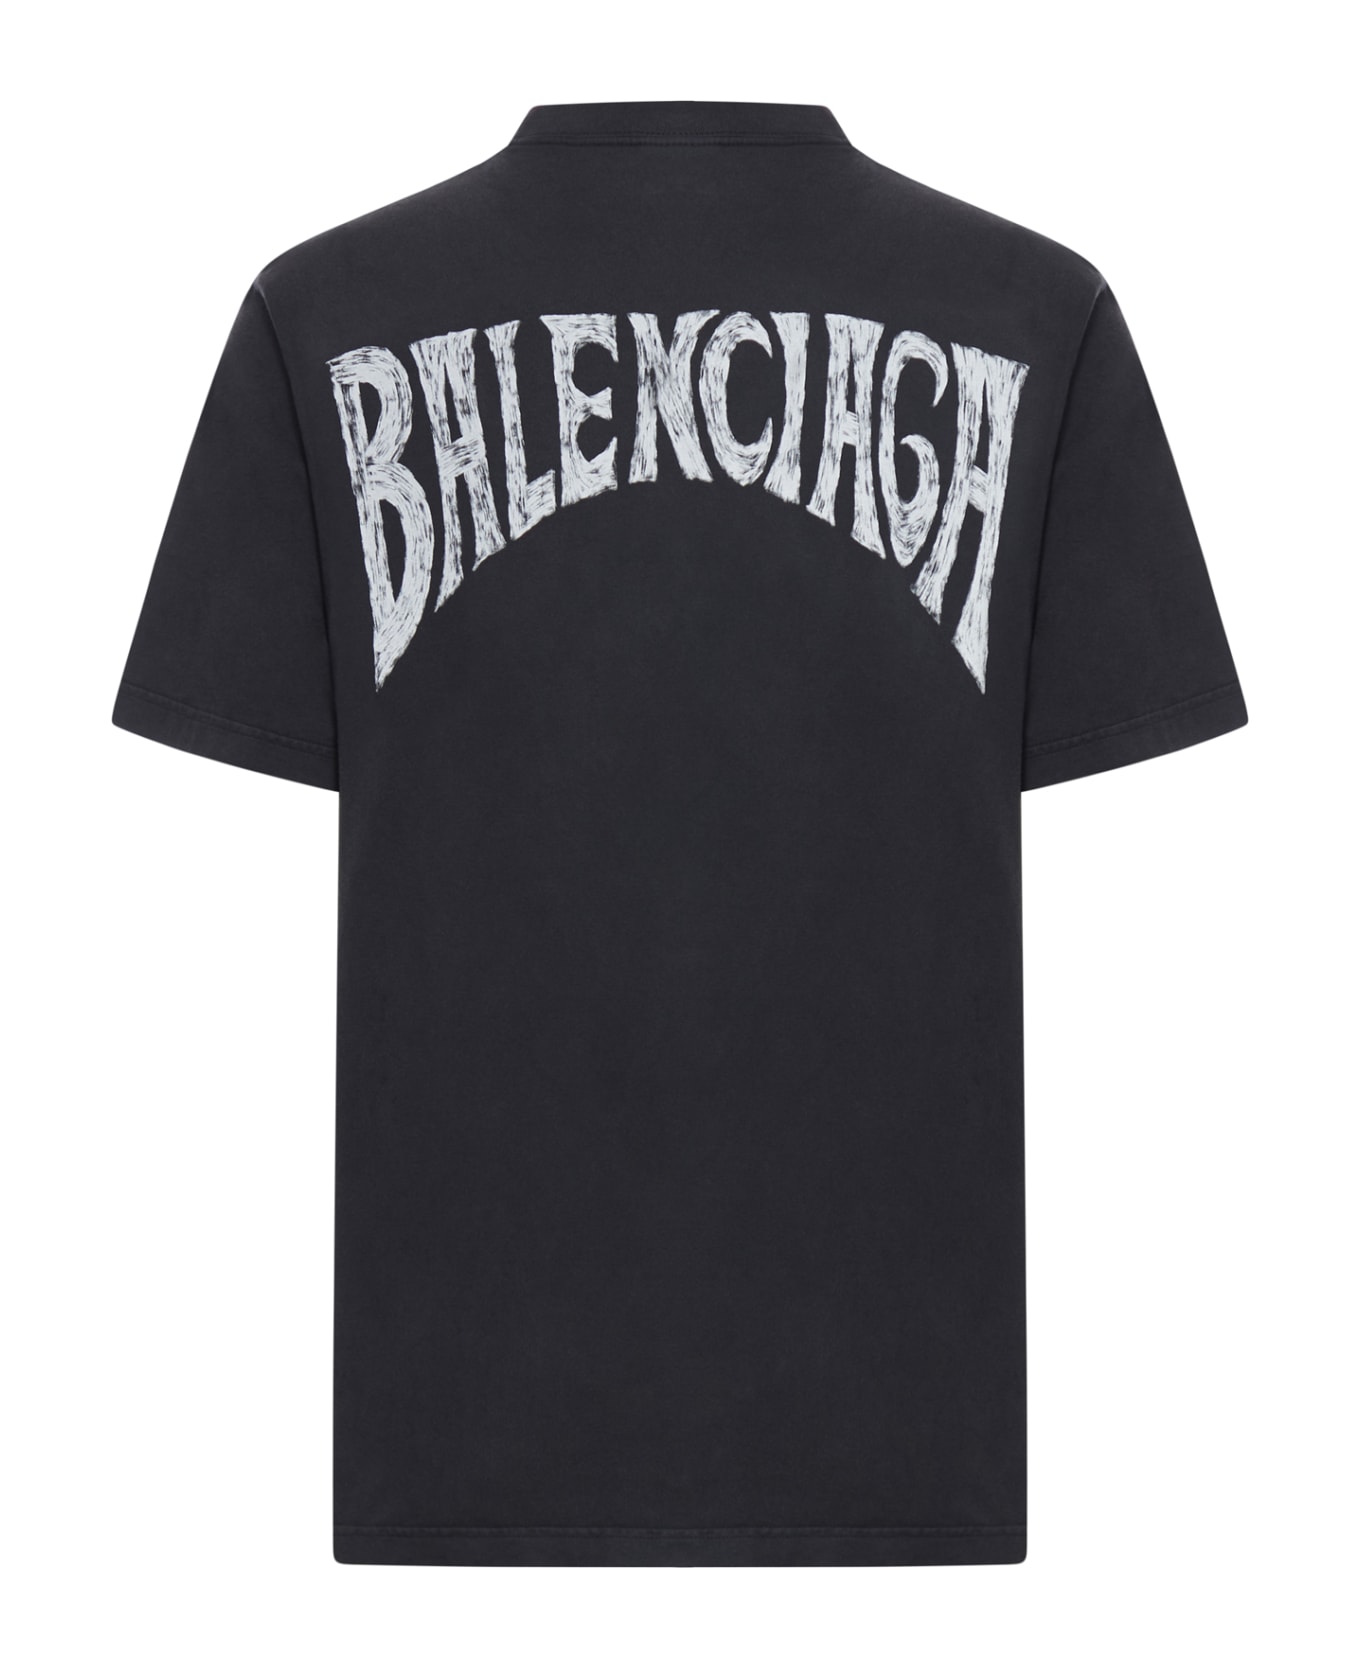 Balenciaga Hand-drawn T-shirt - Black